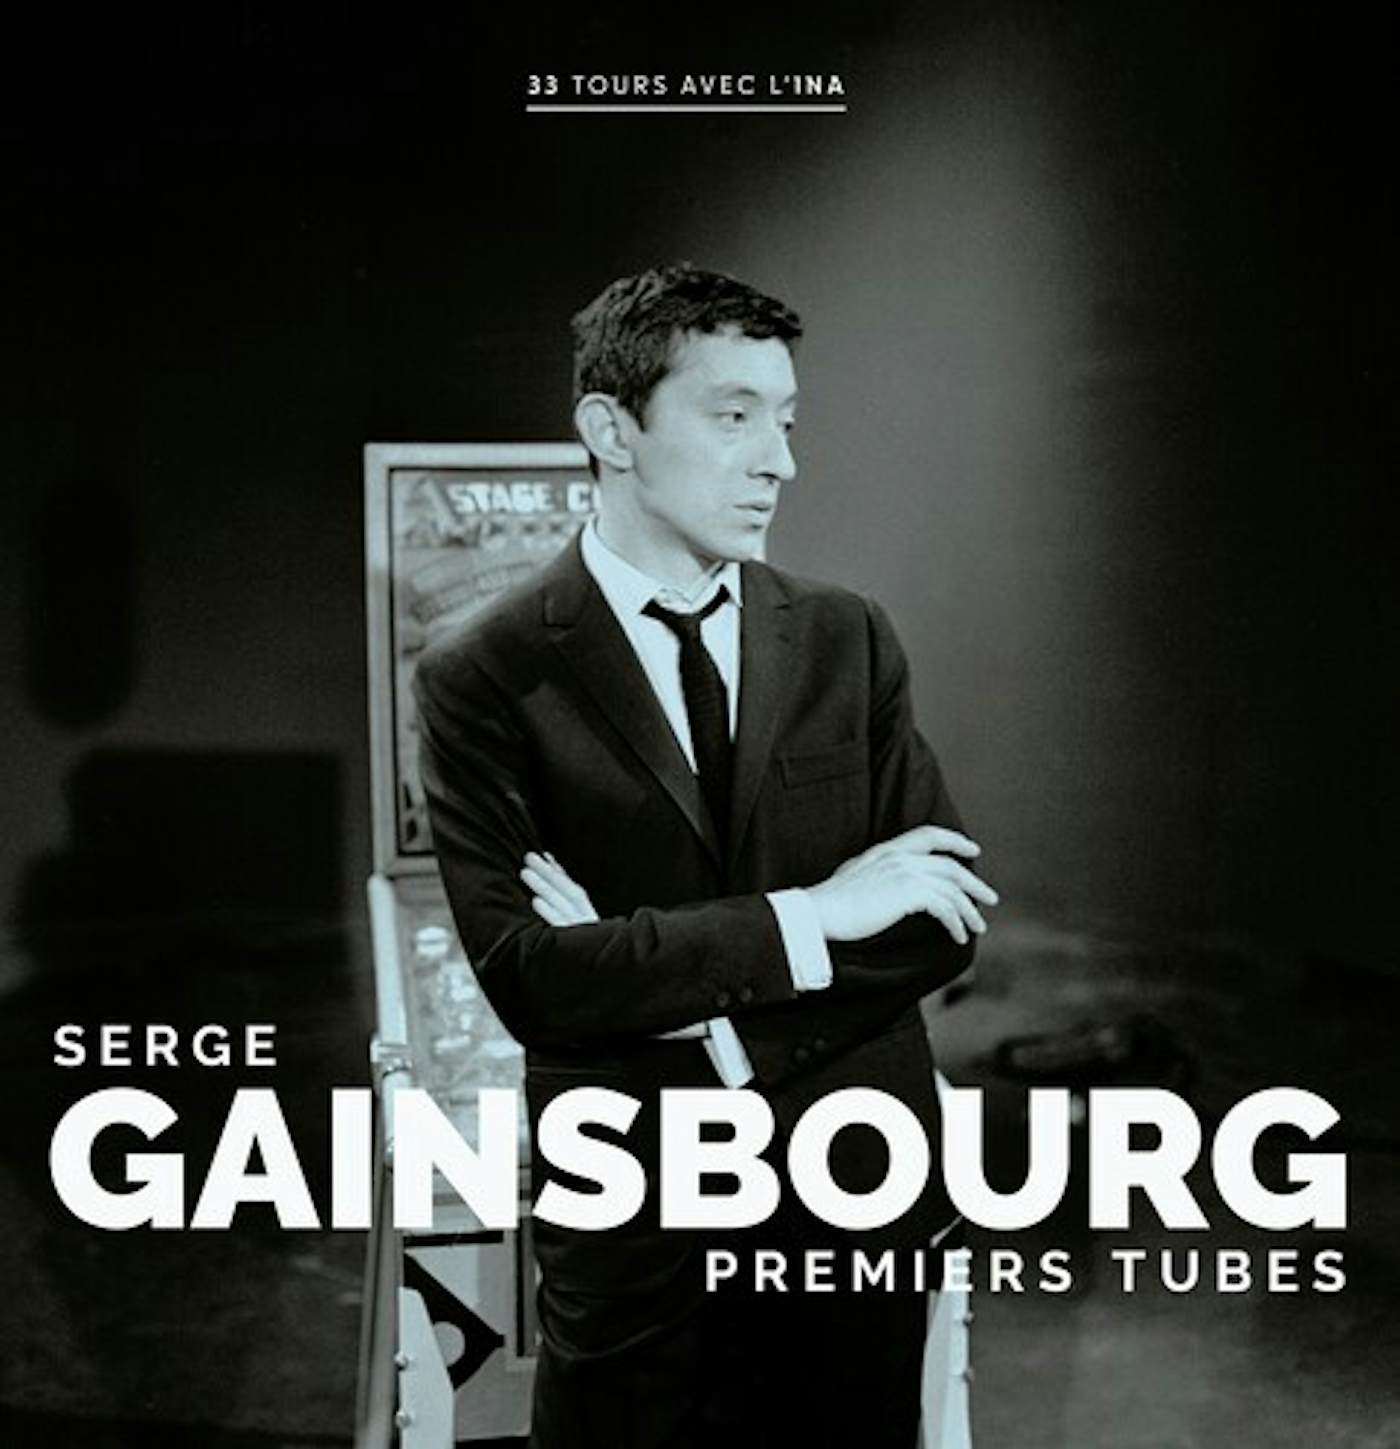 Serge Gainsbourg - La Chanson de PREVERT (LP)